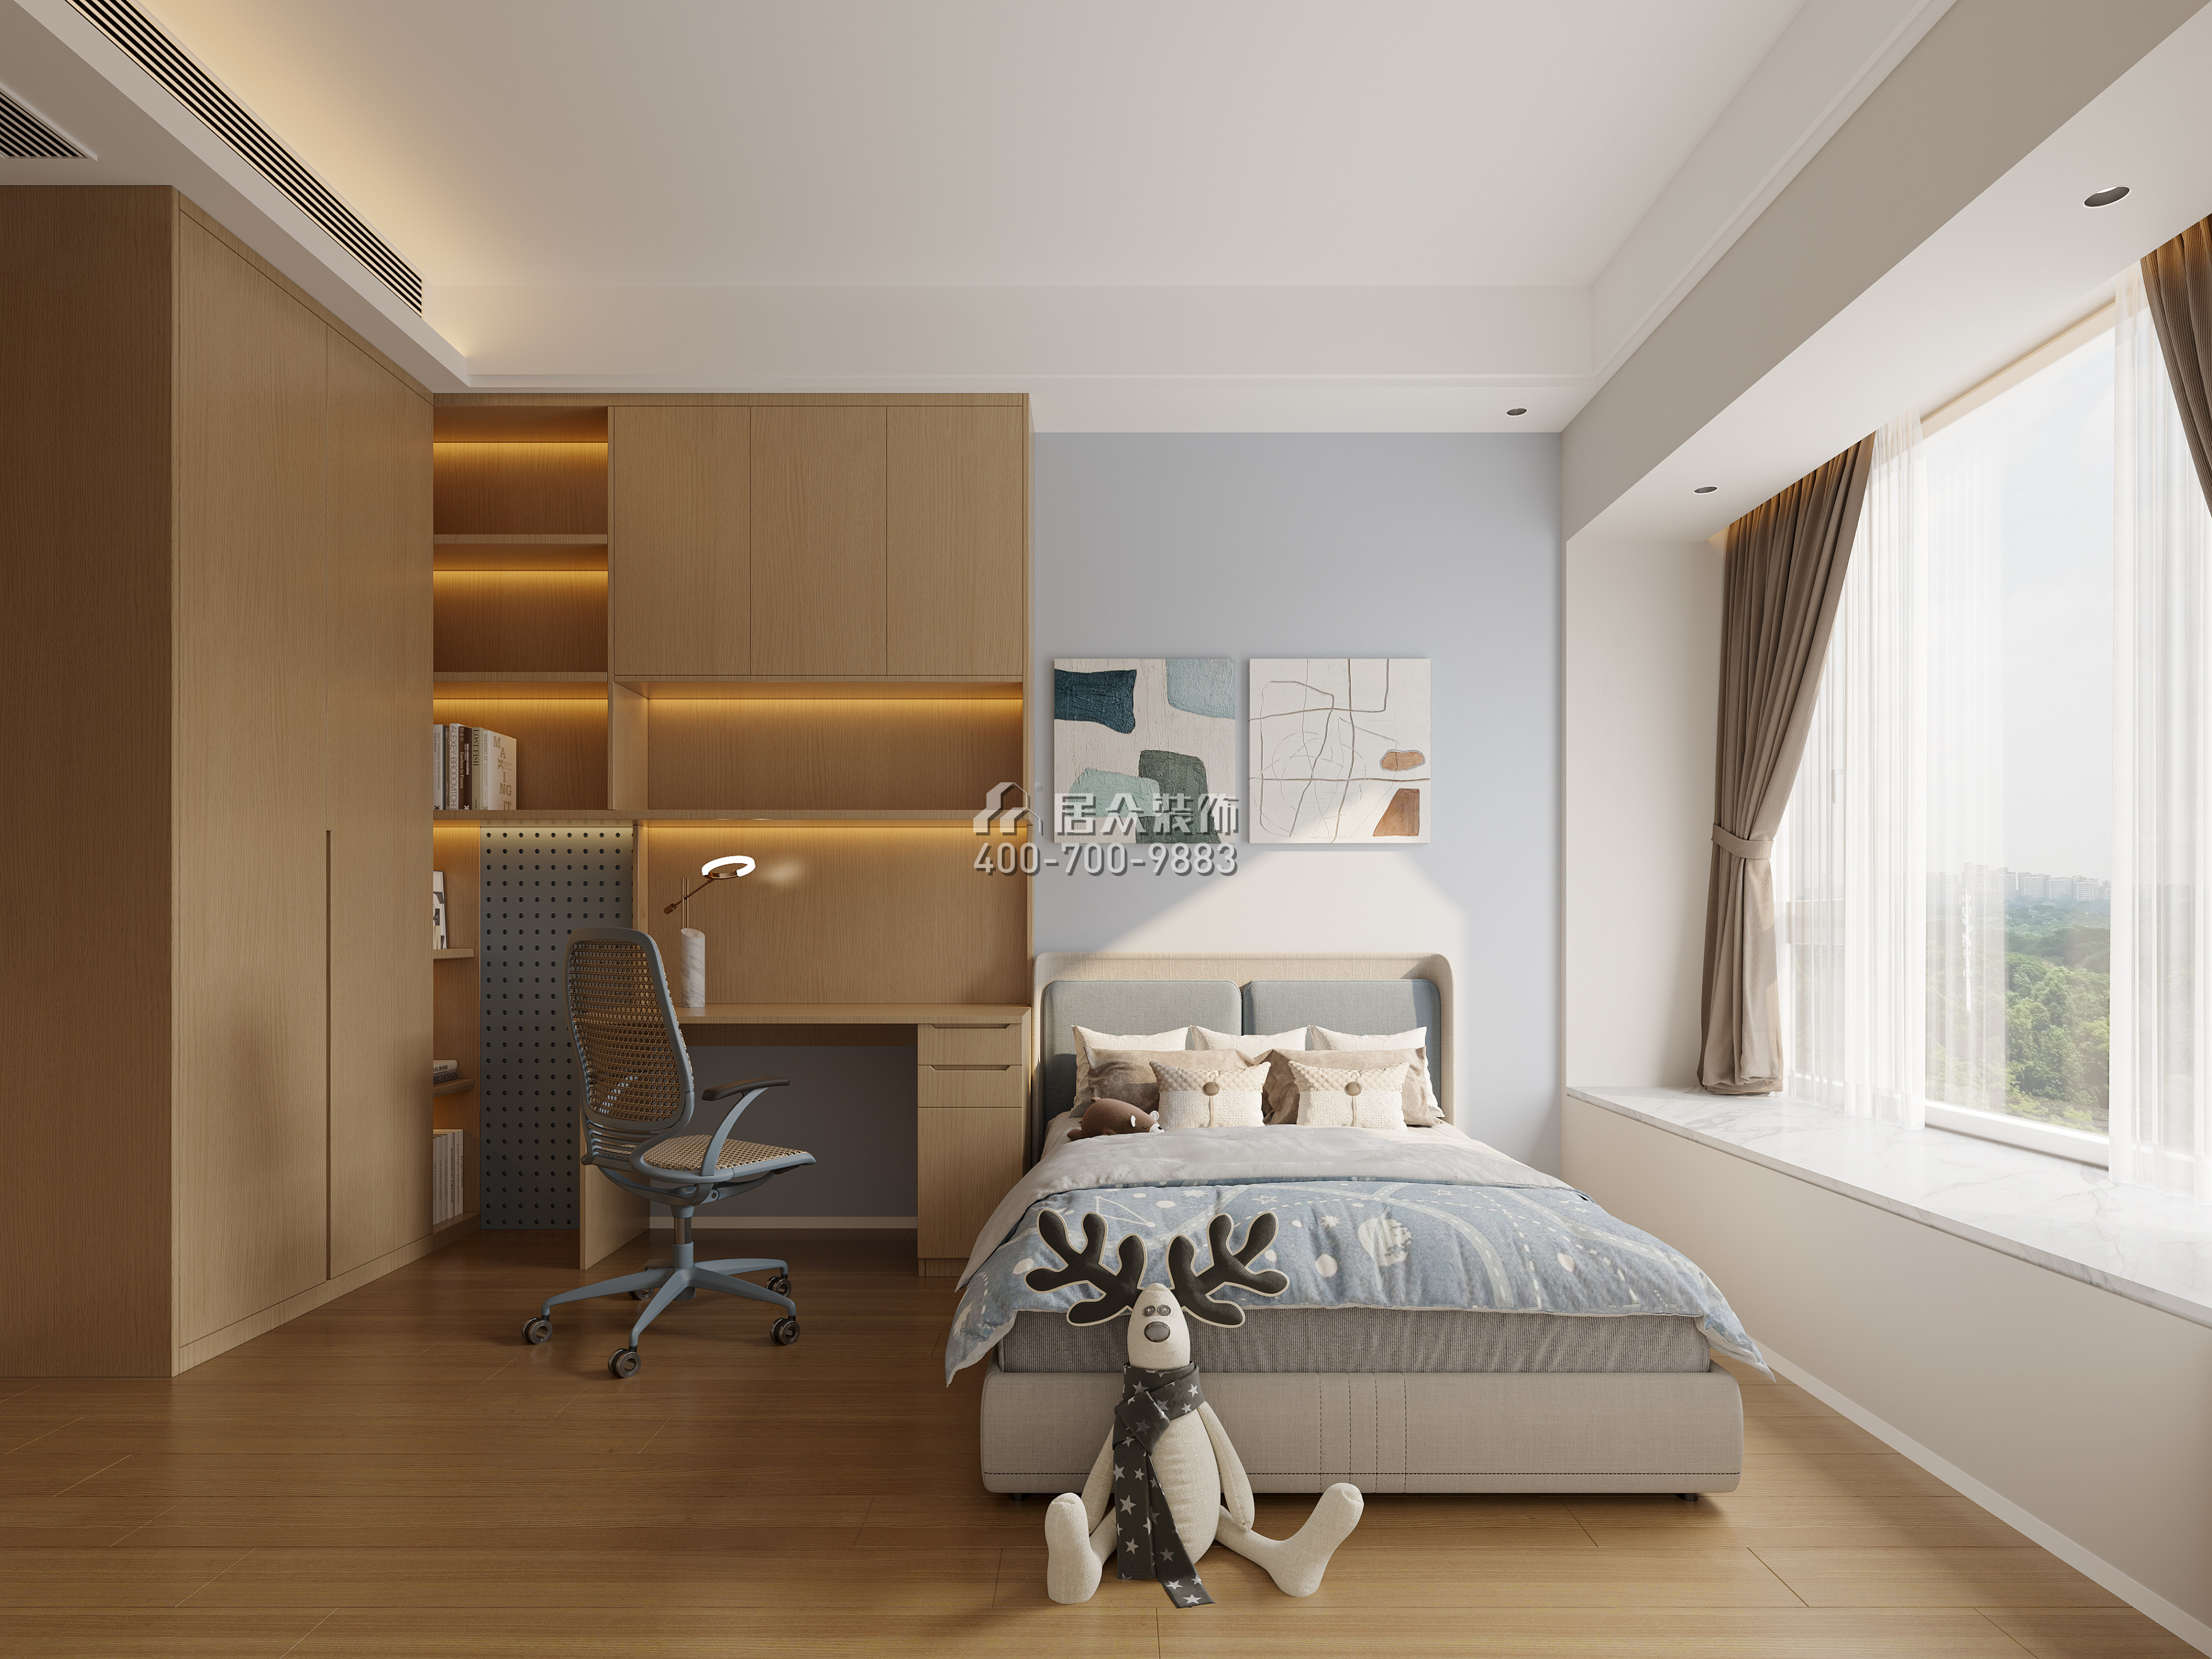 海印長城136平方米現代簡約風格平層戶型臥室裝修效果圖